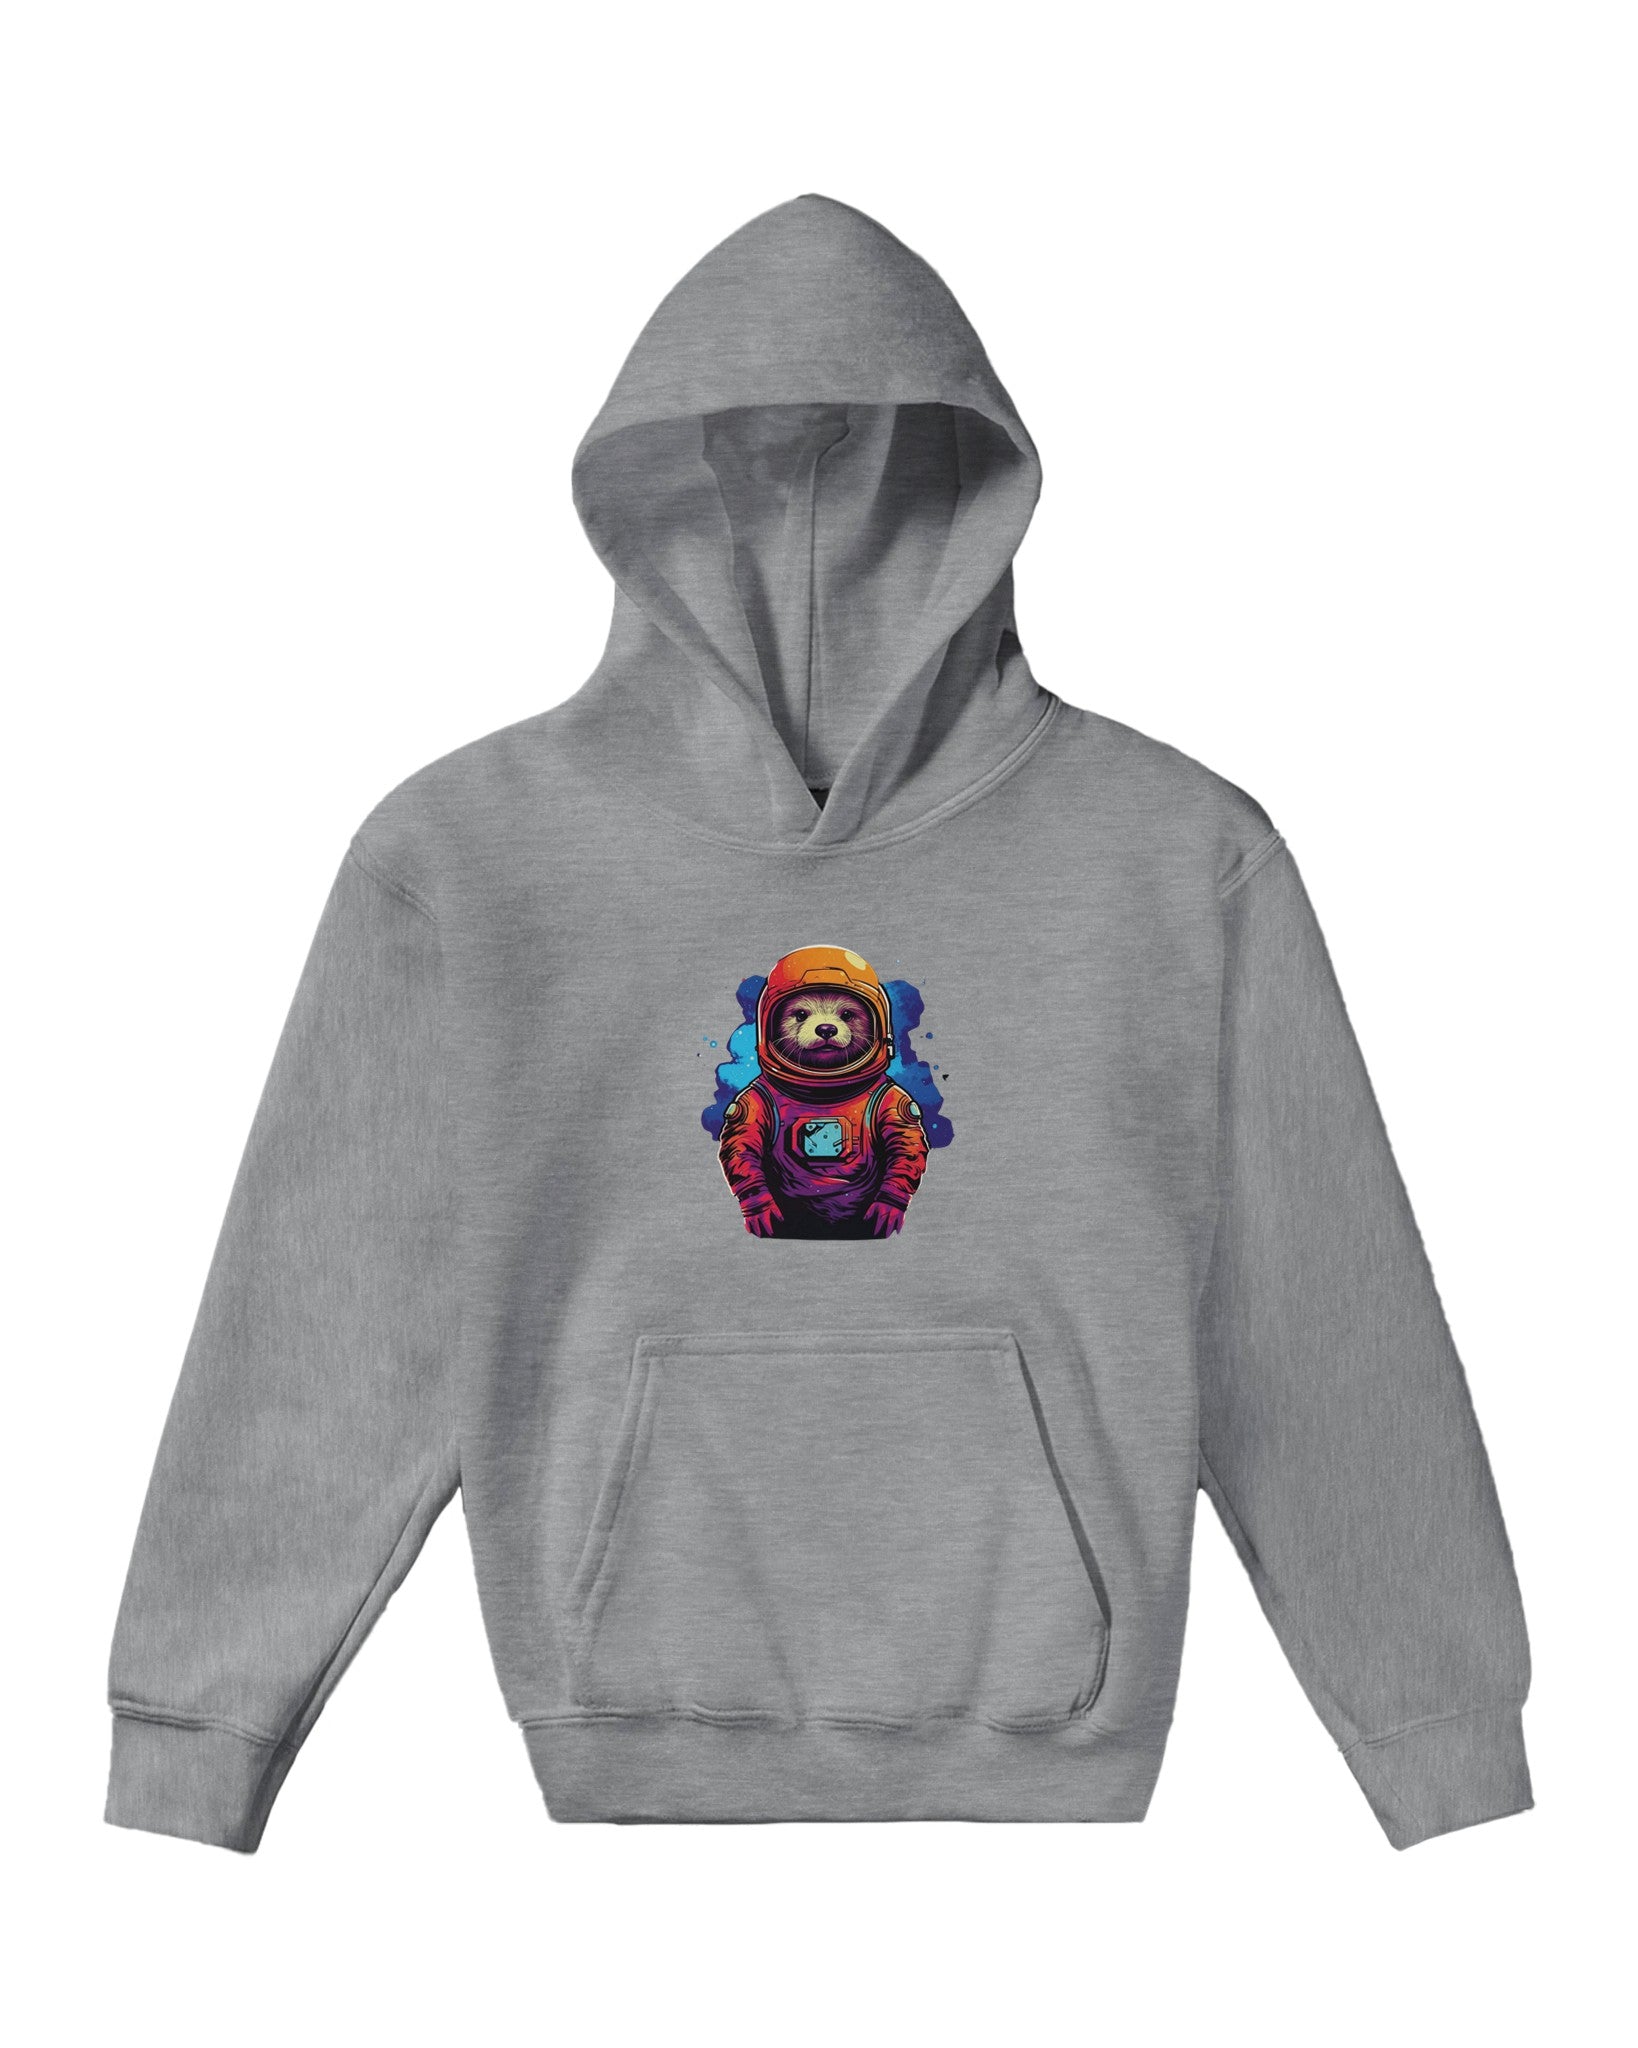 Spacefarer Sloth Odyssey Kids Pullover Hoodie - Optimalprint